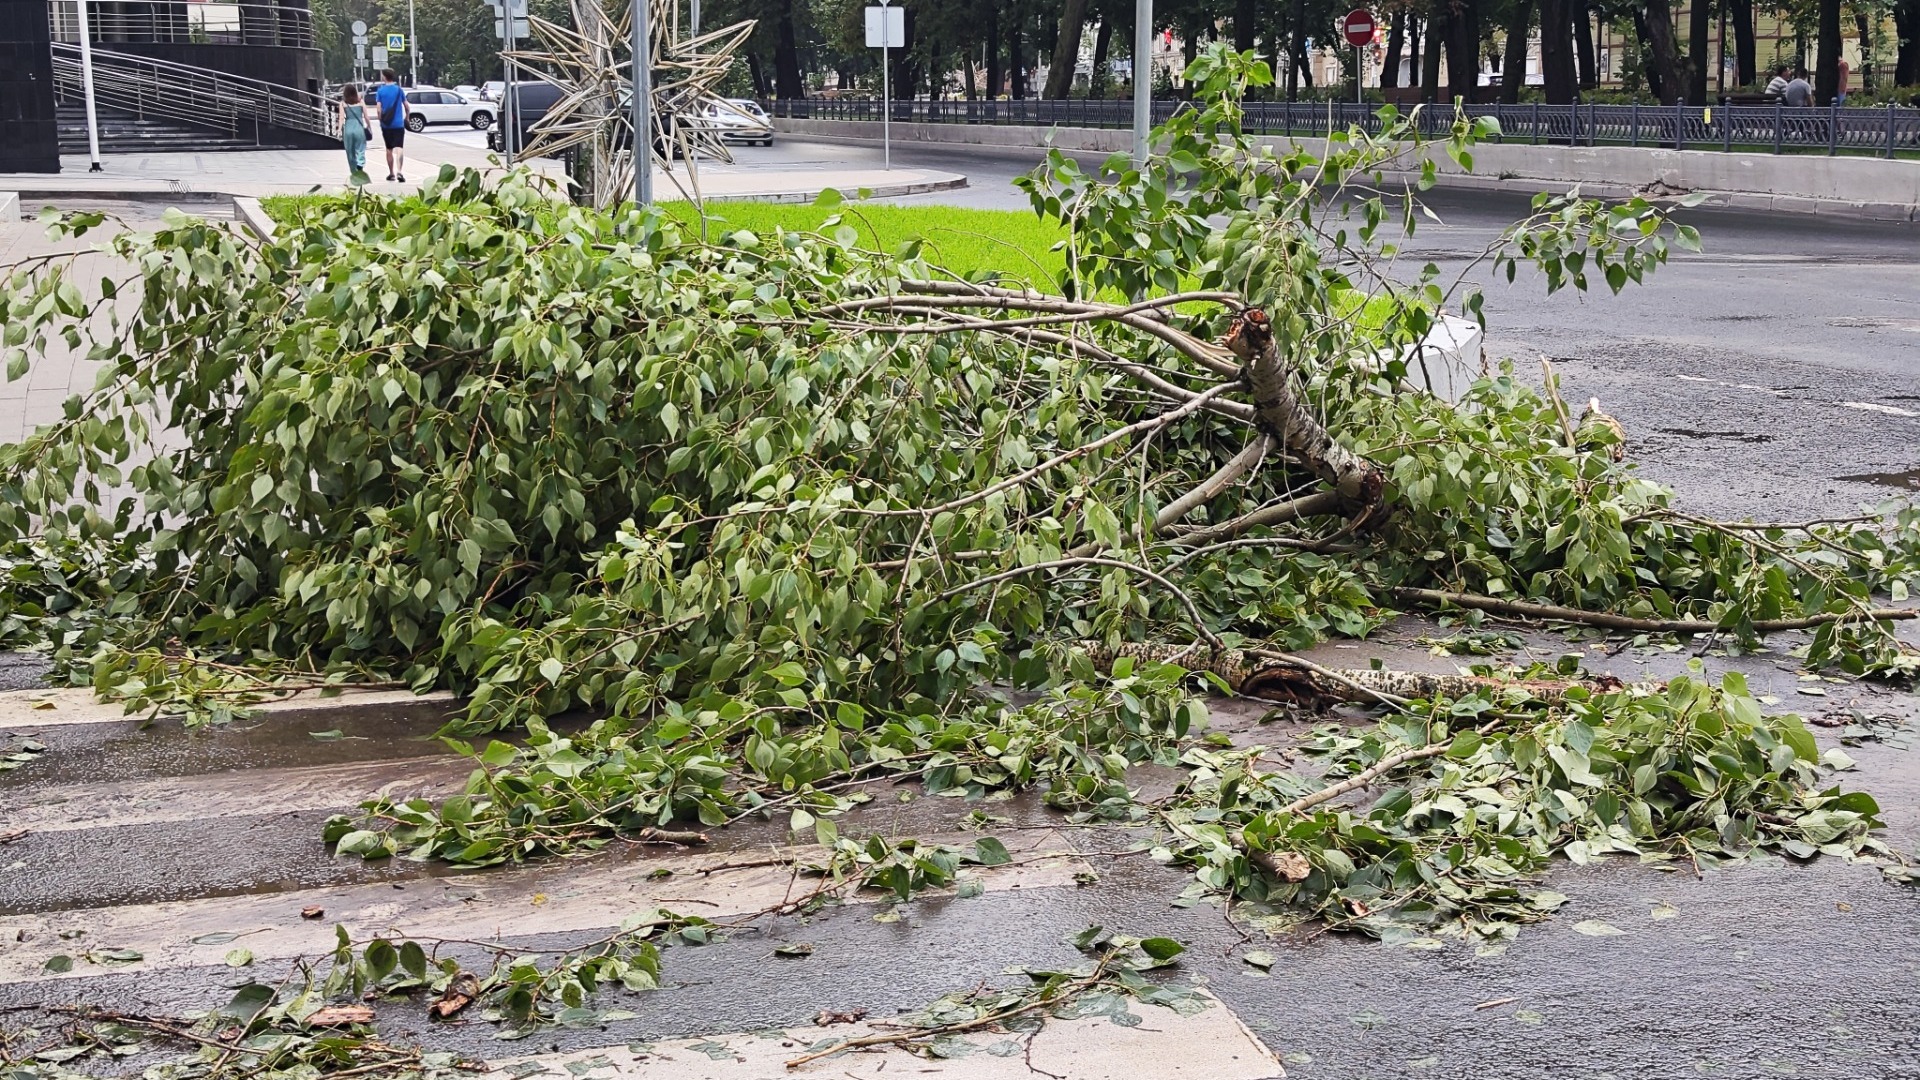 Последствия урагана в Нижнем Новгороде